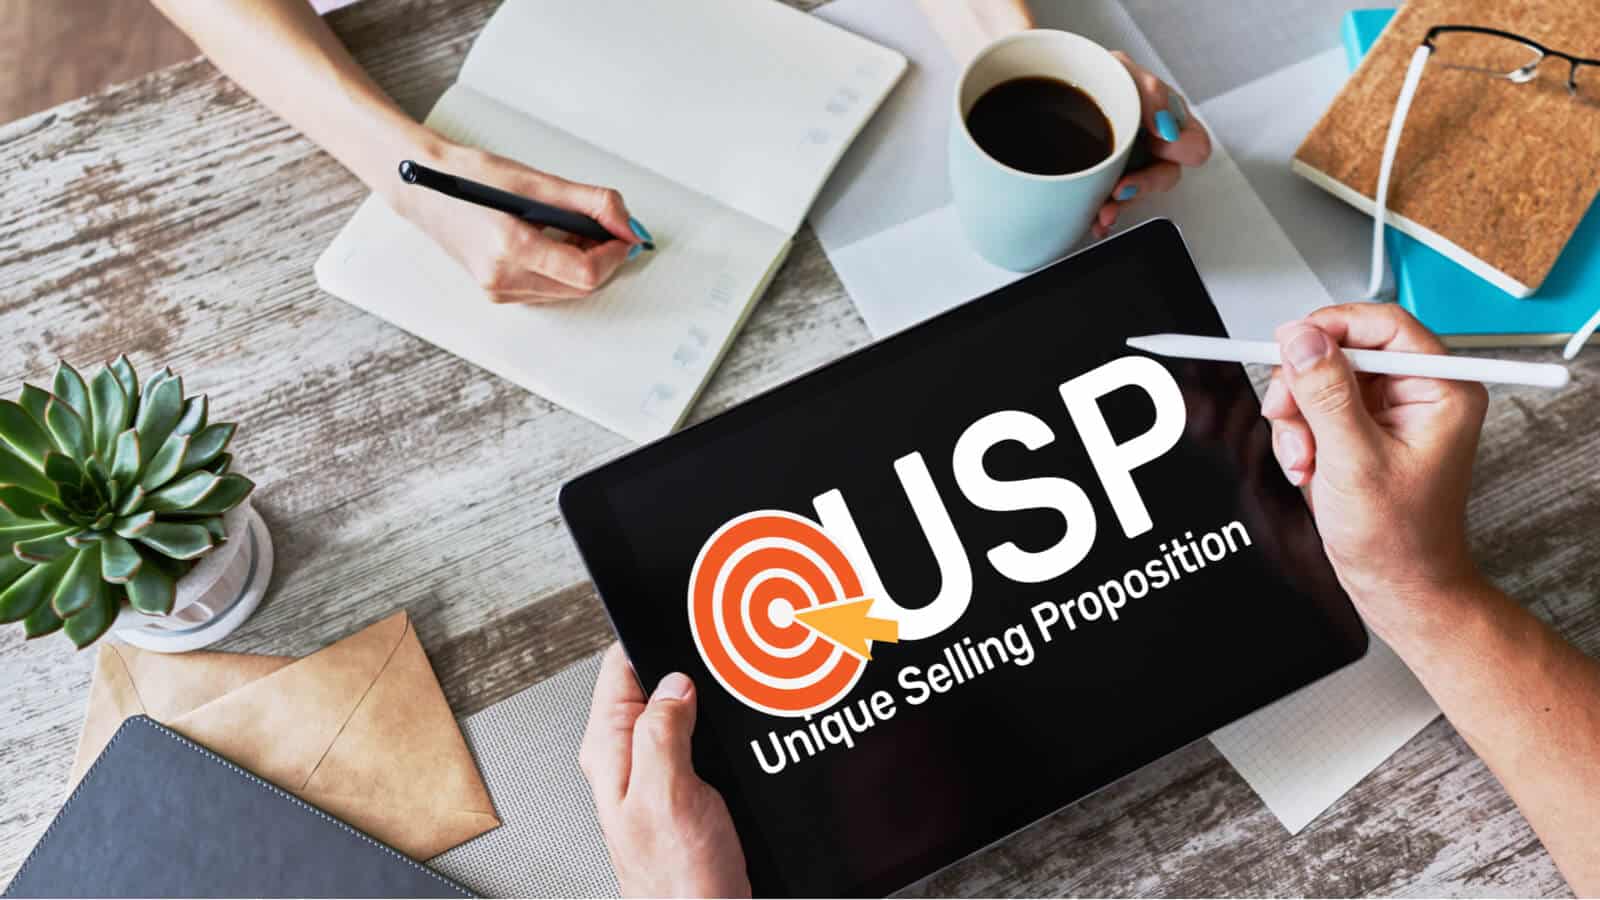 Ein iPad auf dem USP steht, unique selling proposition, was das Alleinstellungsmerkmal einer Firma oder eines Produktes bezeichnet